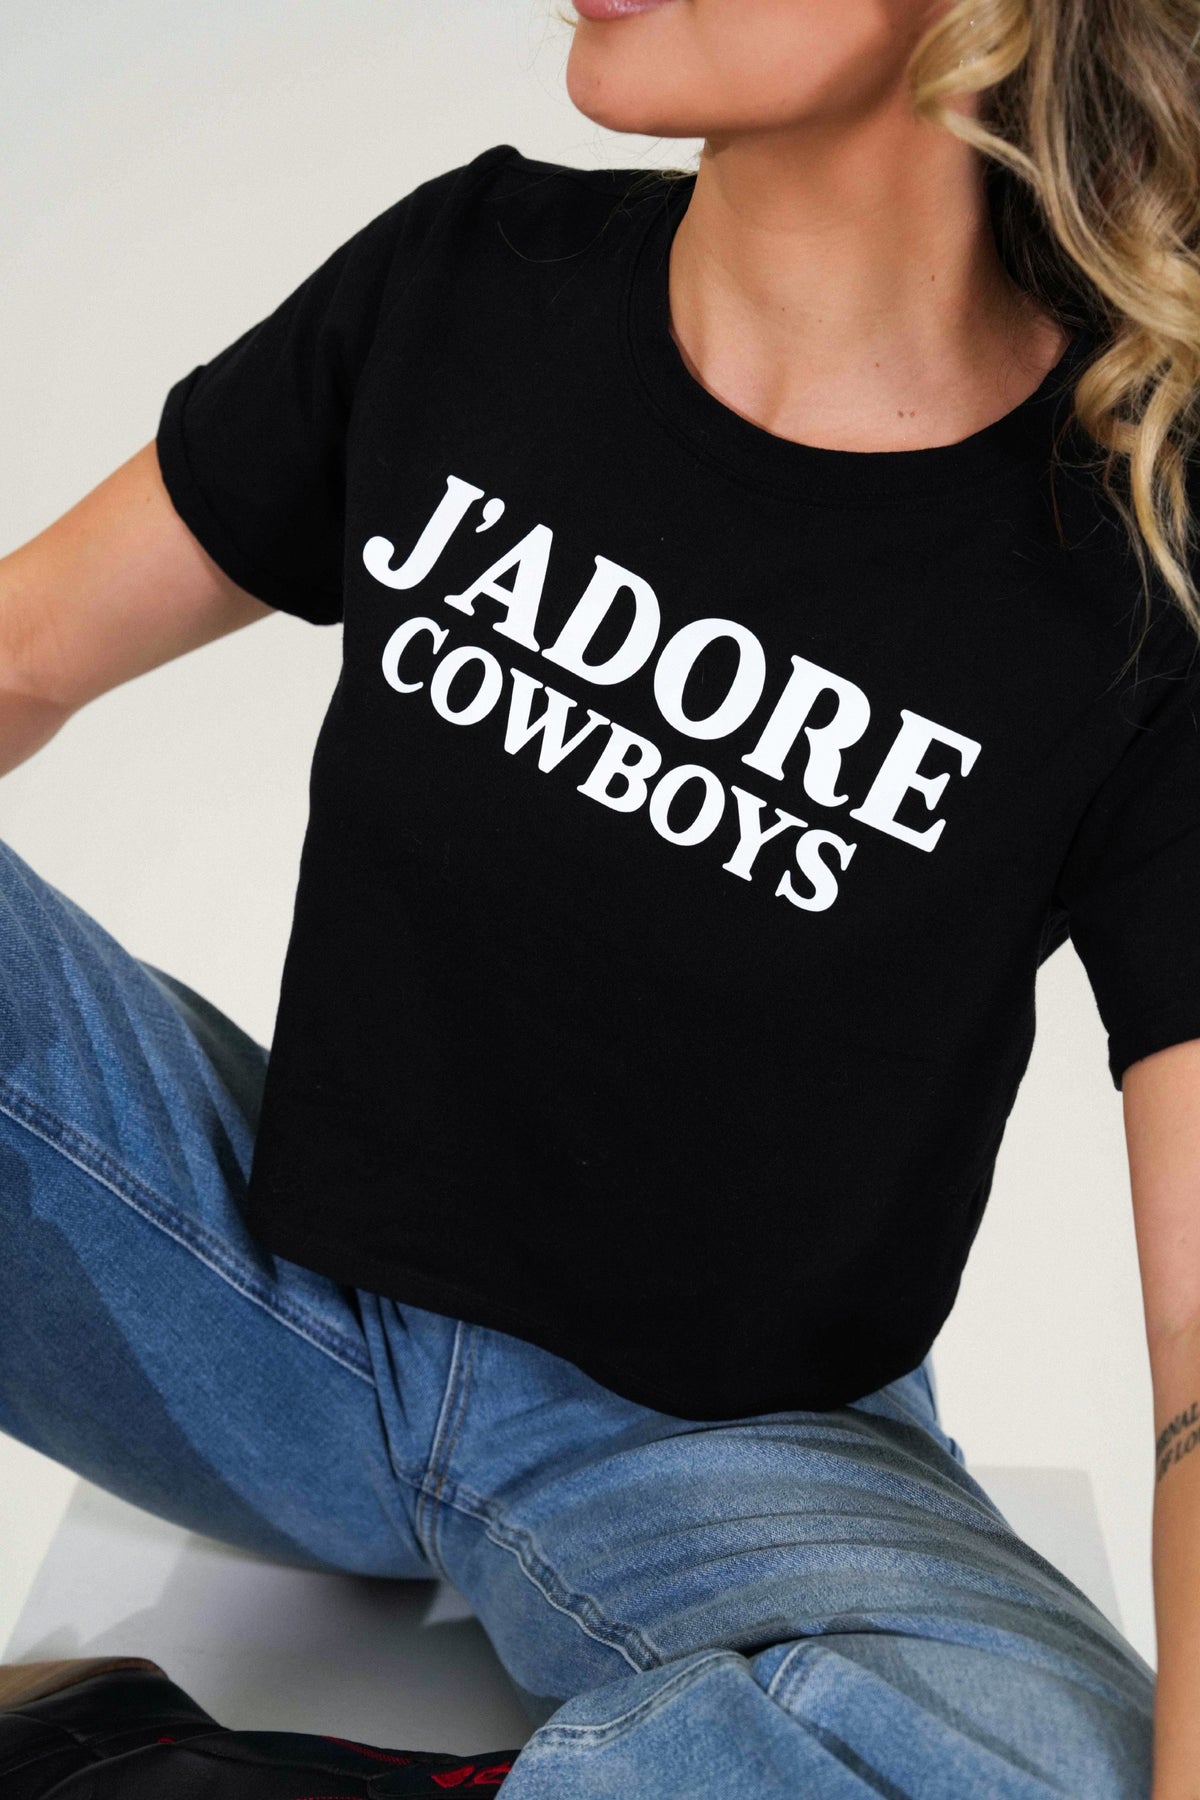 Jadore Cowboys Tee